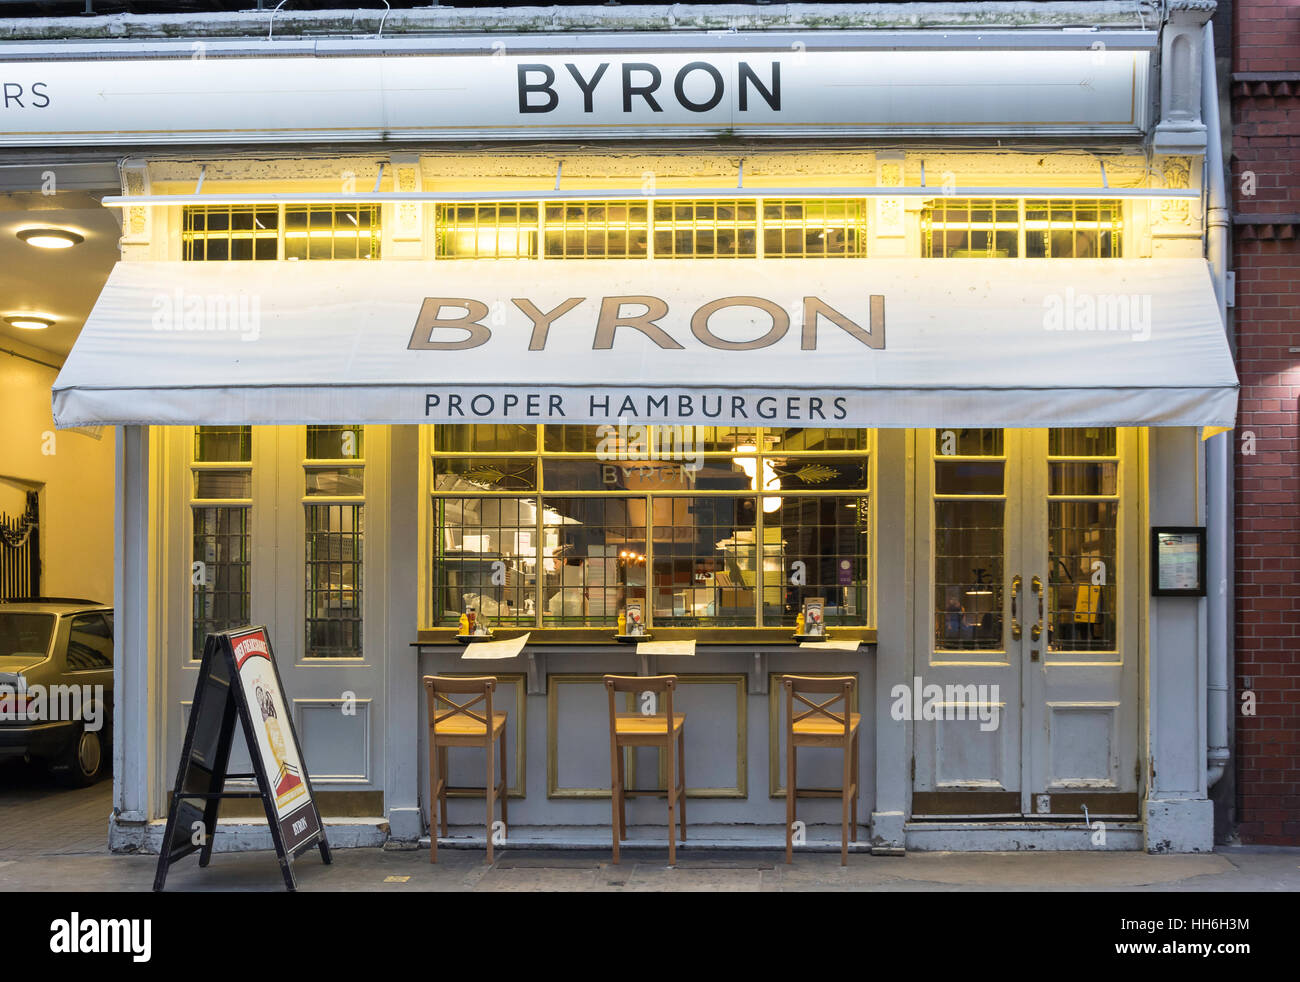 Byron Proper Hamburger Restaurant at dusk, Rathbone Place, Soho, City of Westminster, London, England, United Kingdom Stock Photo